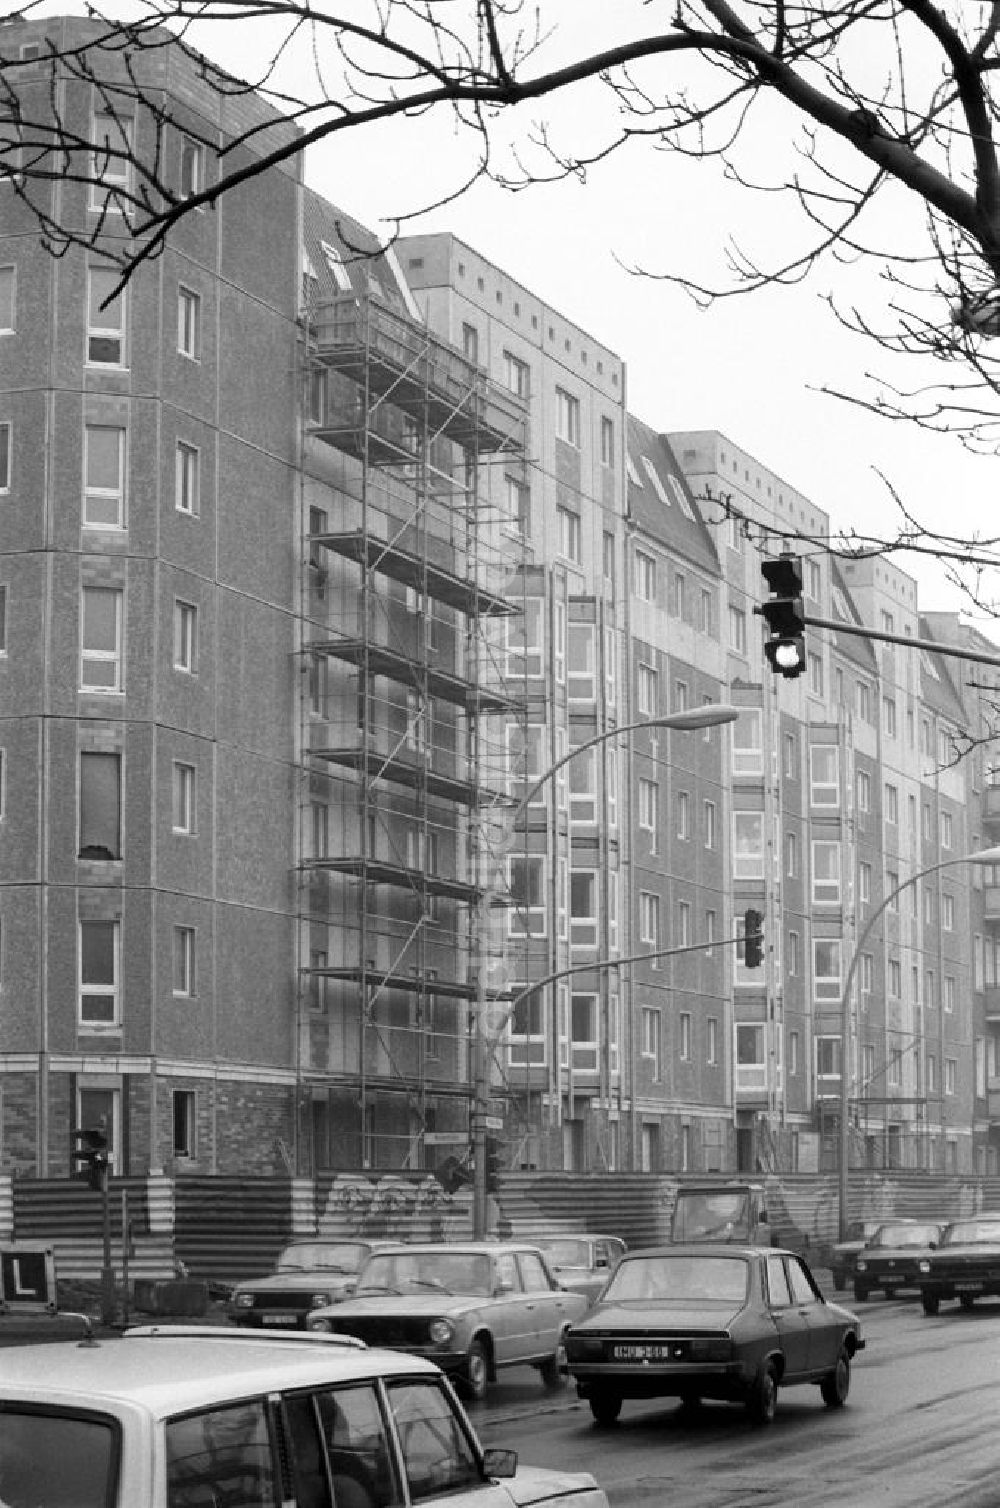 DDR-Bildarchiv: Berlin - Wohnungsbau in der Stralauer Allee in Berlin